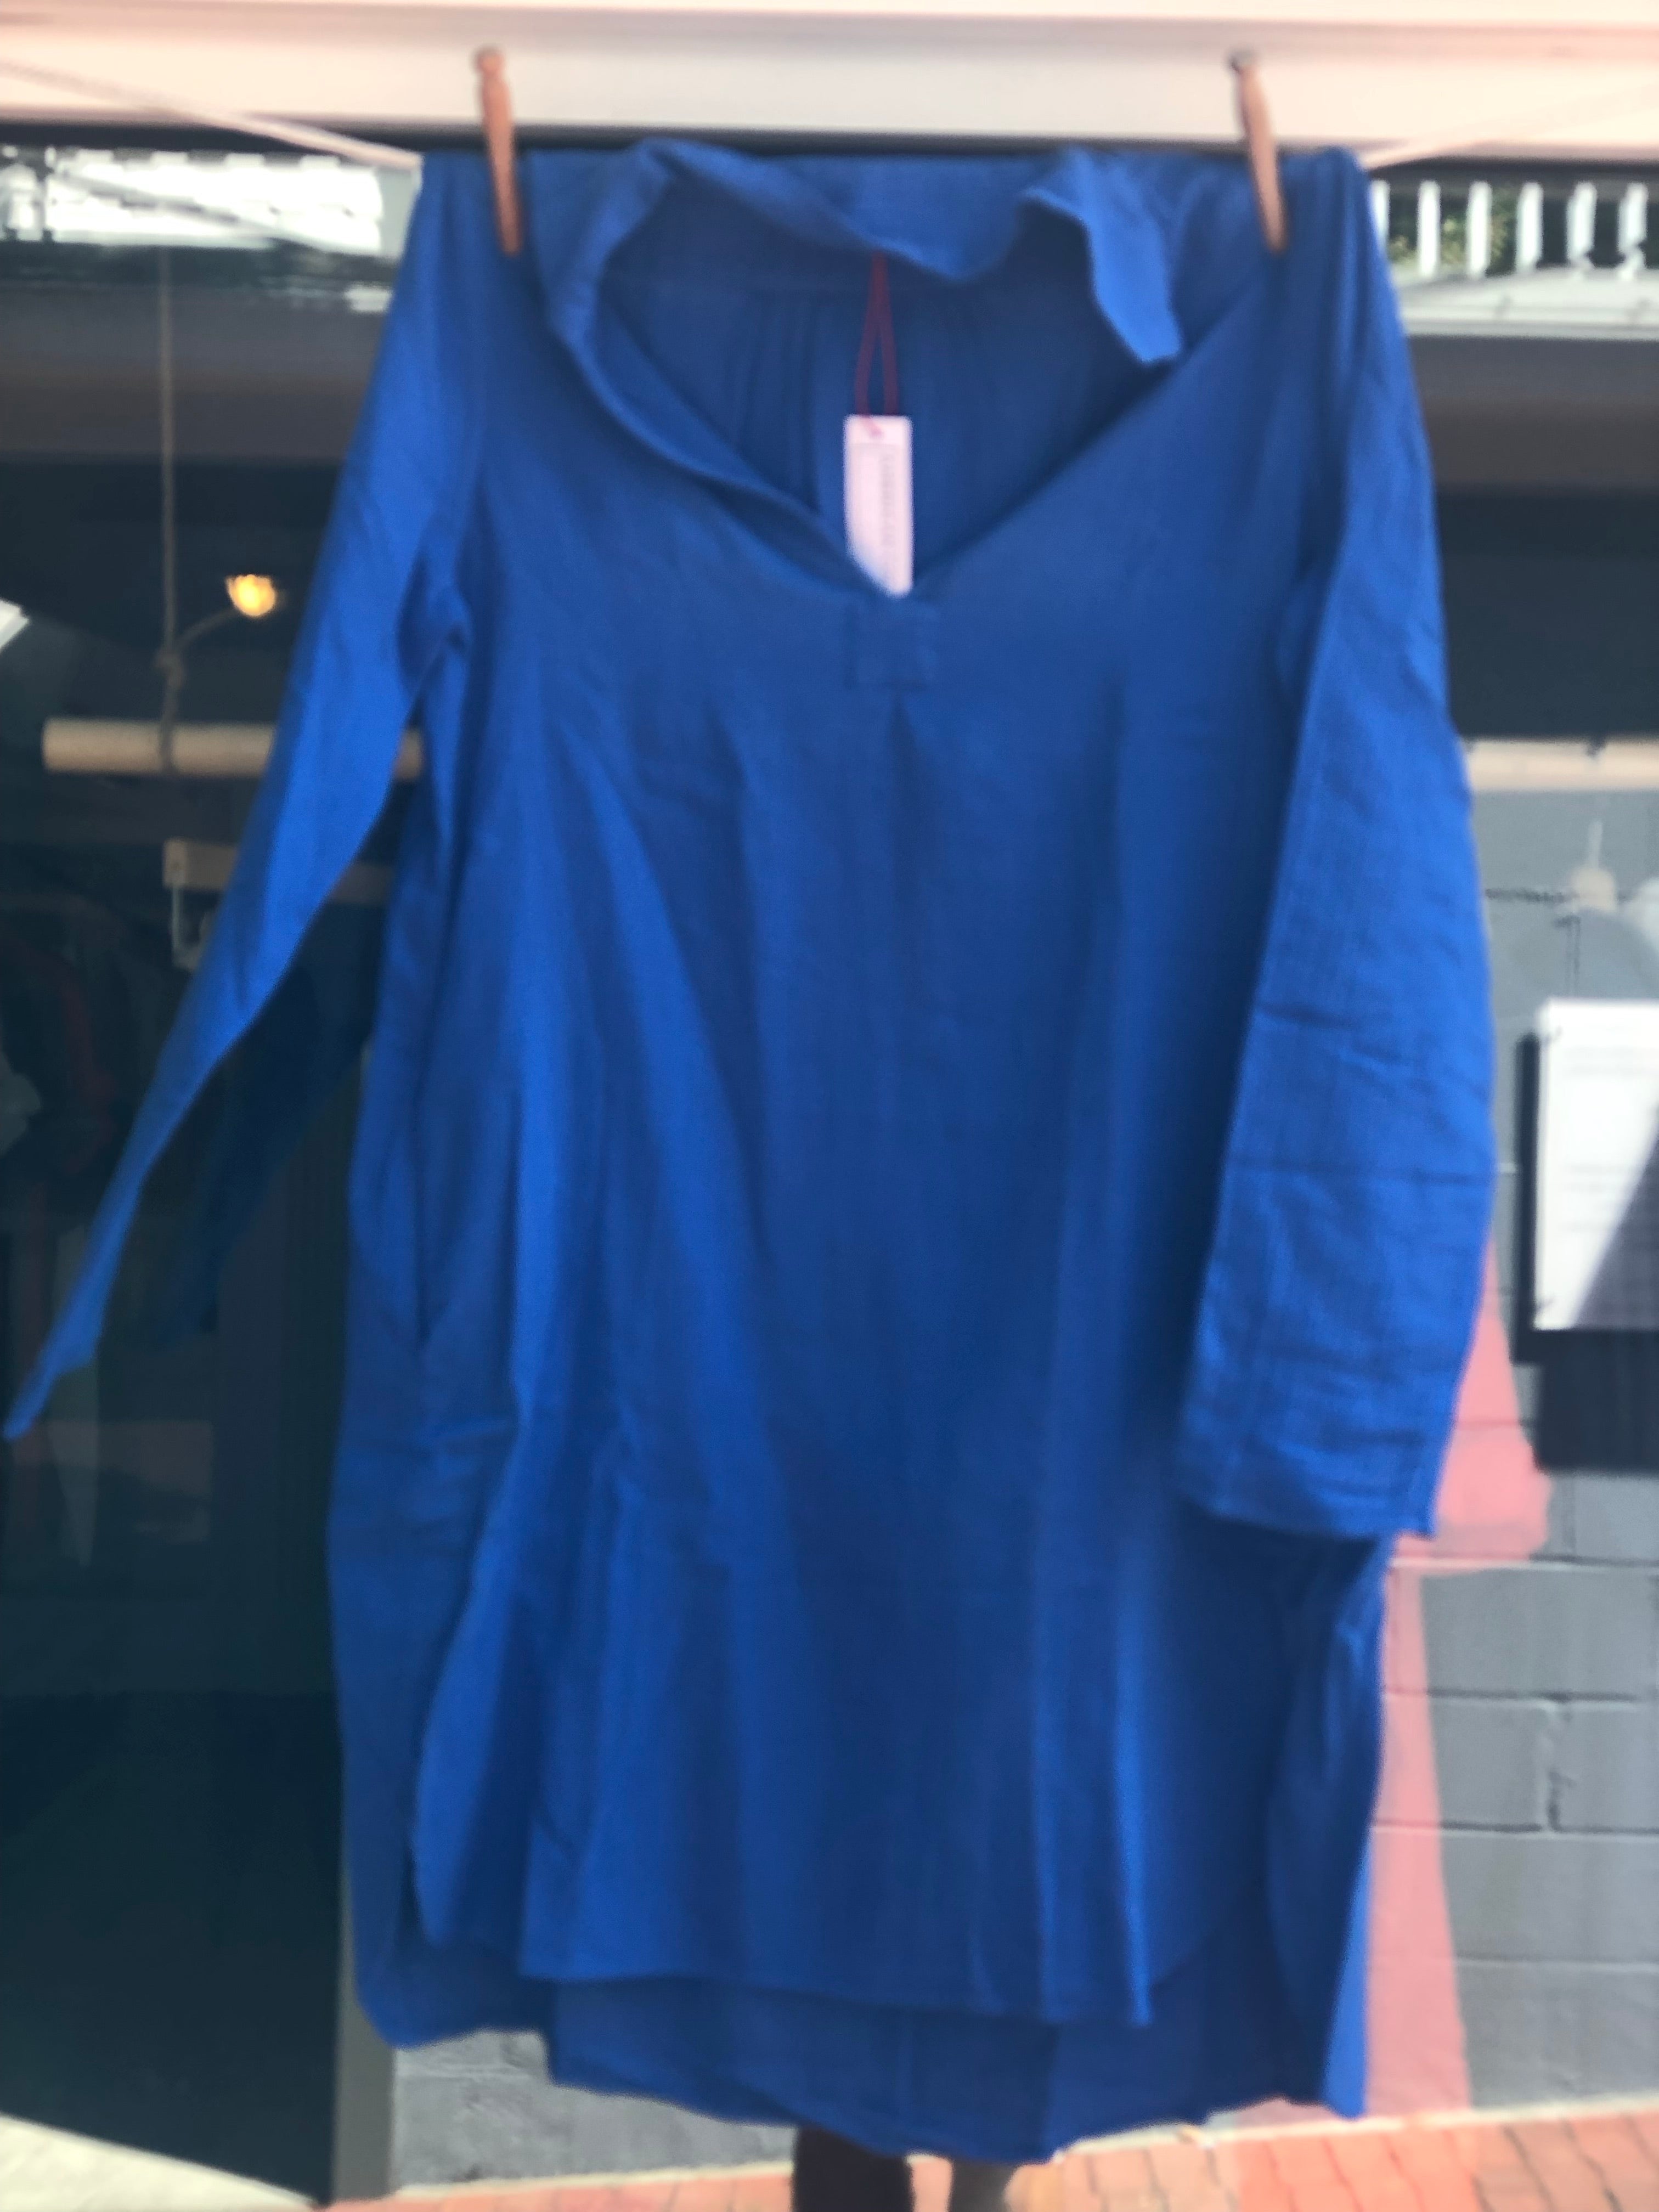 St. Tropez Dress in Dodger Blue Gauze